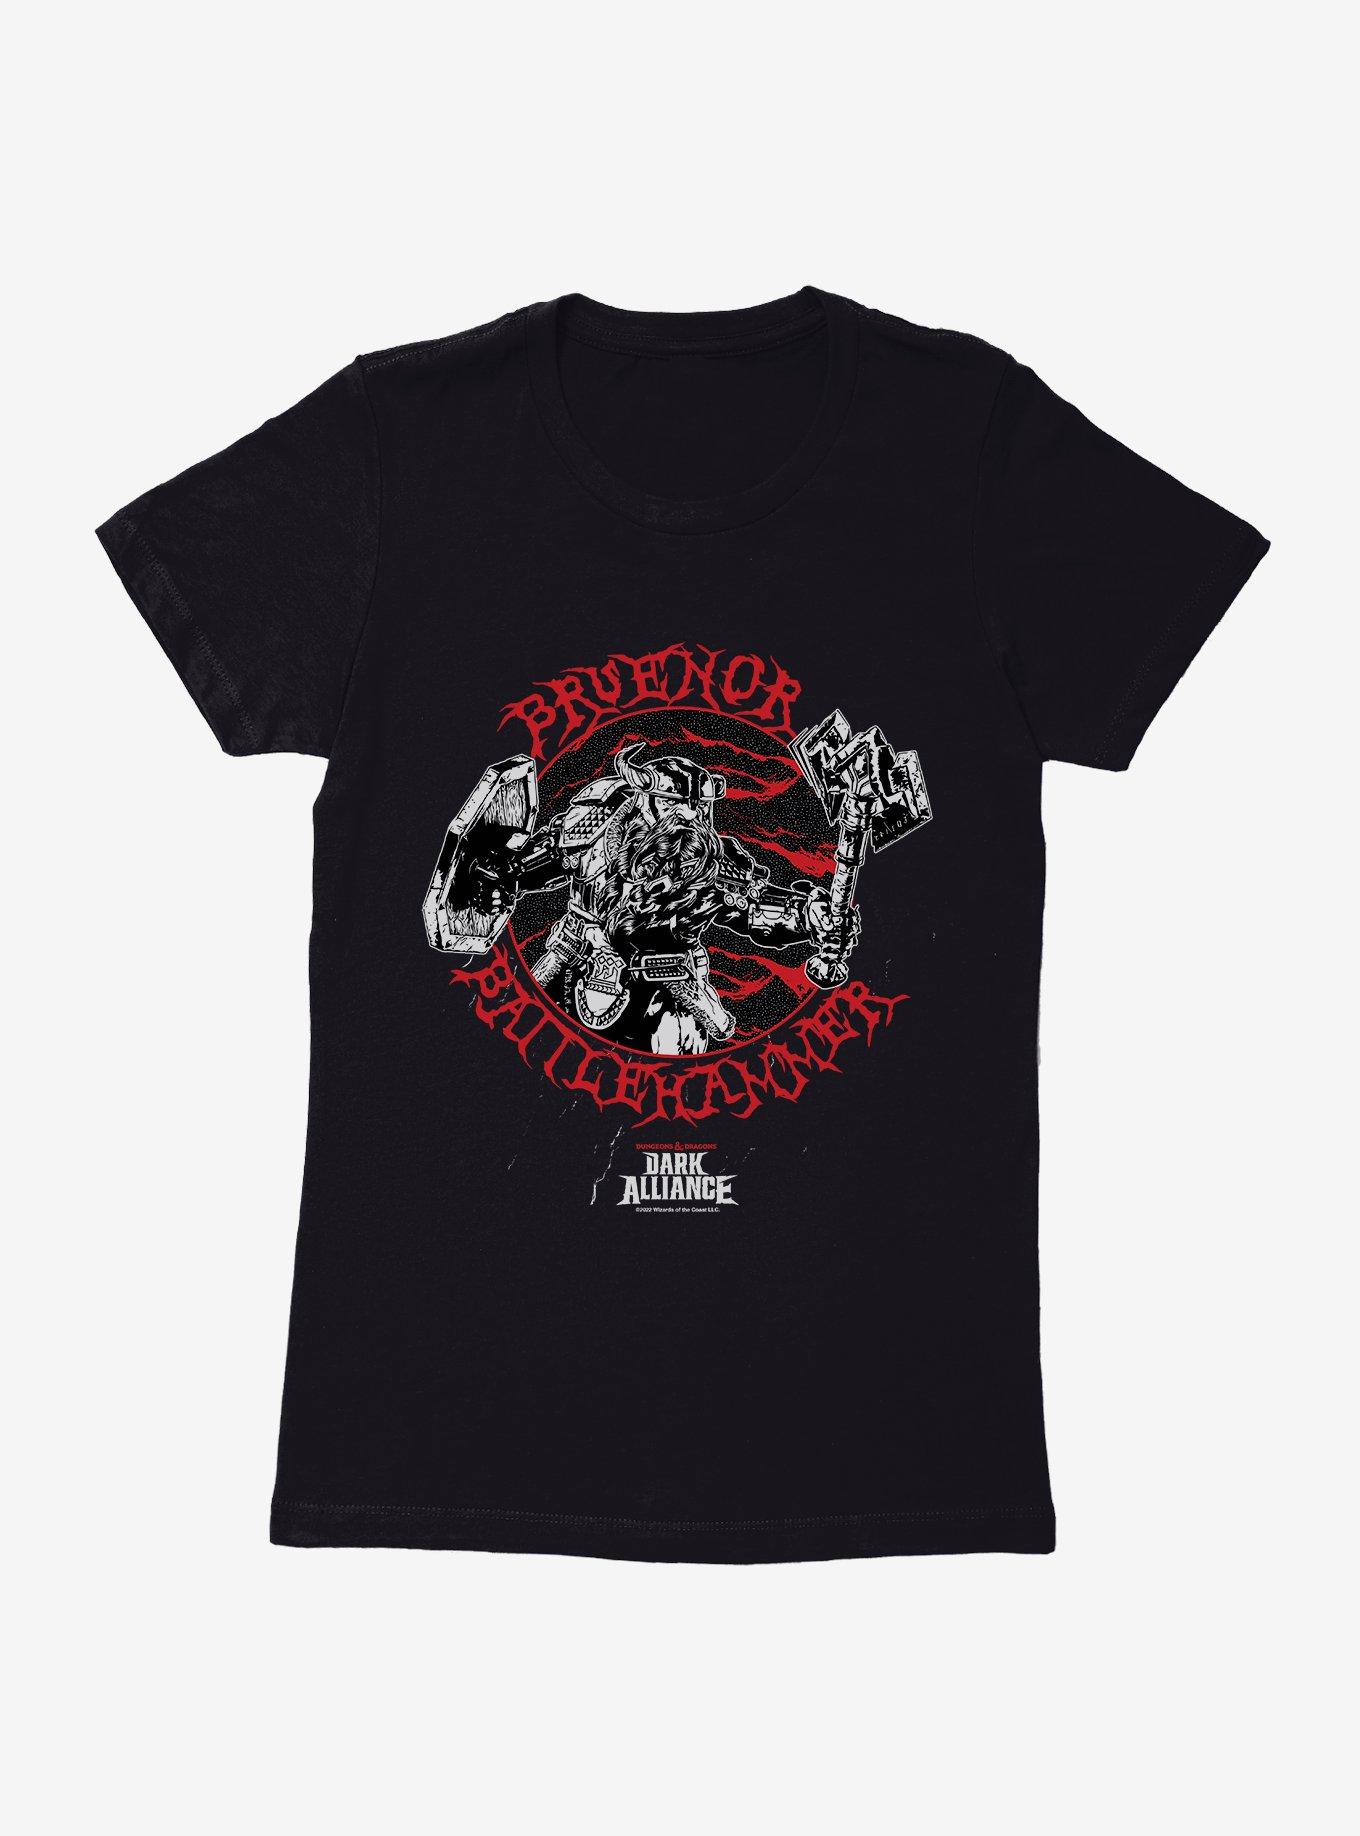 Dungeons & Dragons Dark Alliance Bruenor Battlehammer Womens T-Shirt, BLACK, hi-res